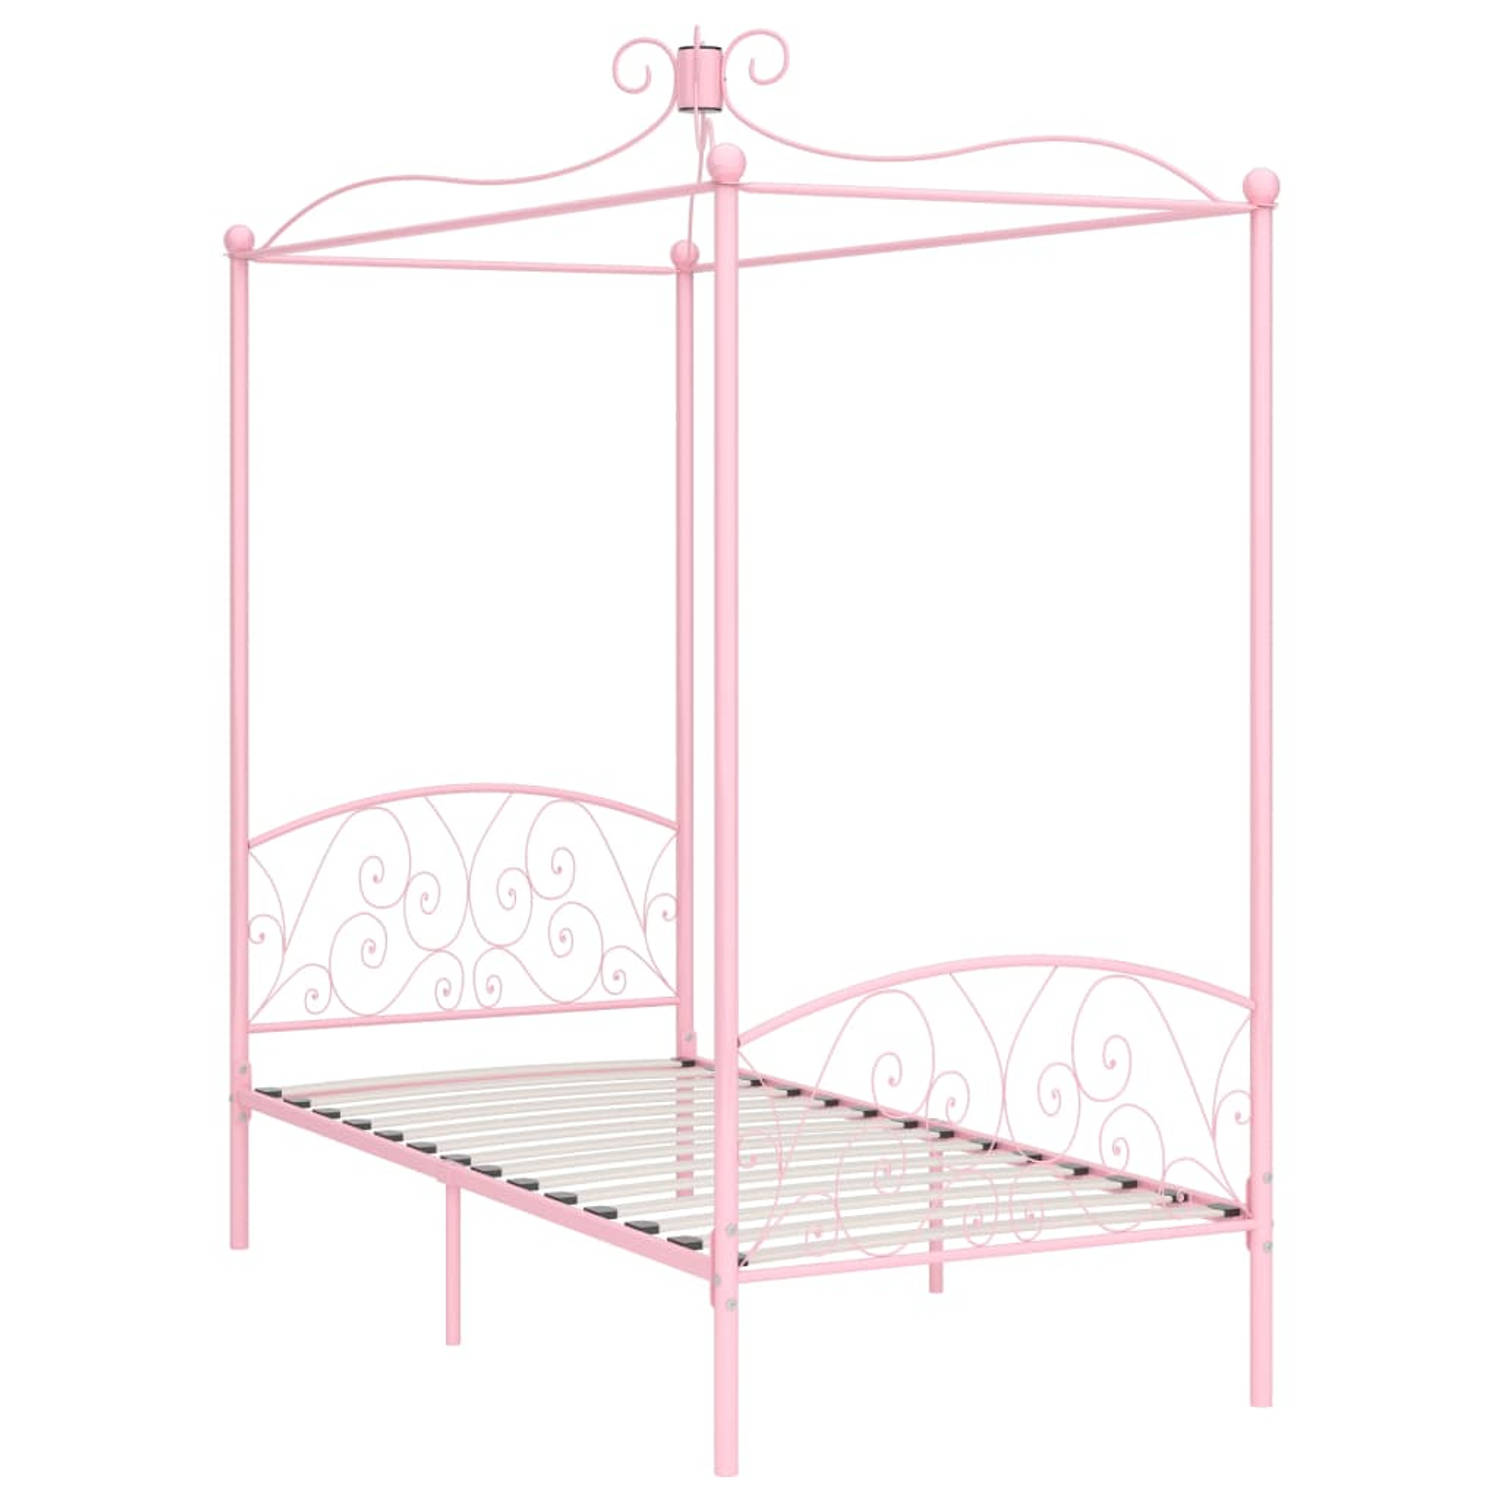 The Living Store Hemelbedframe metaal roze 90x200 cm - Bed